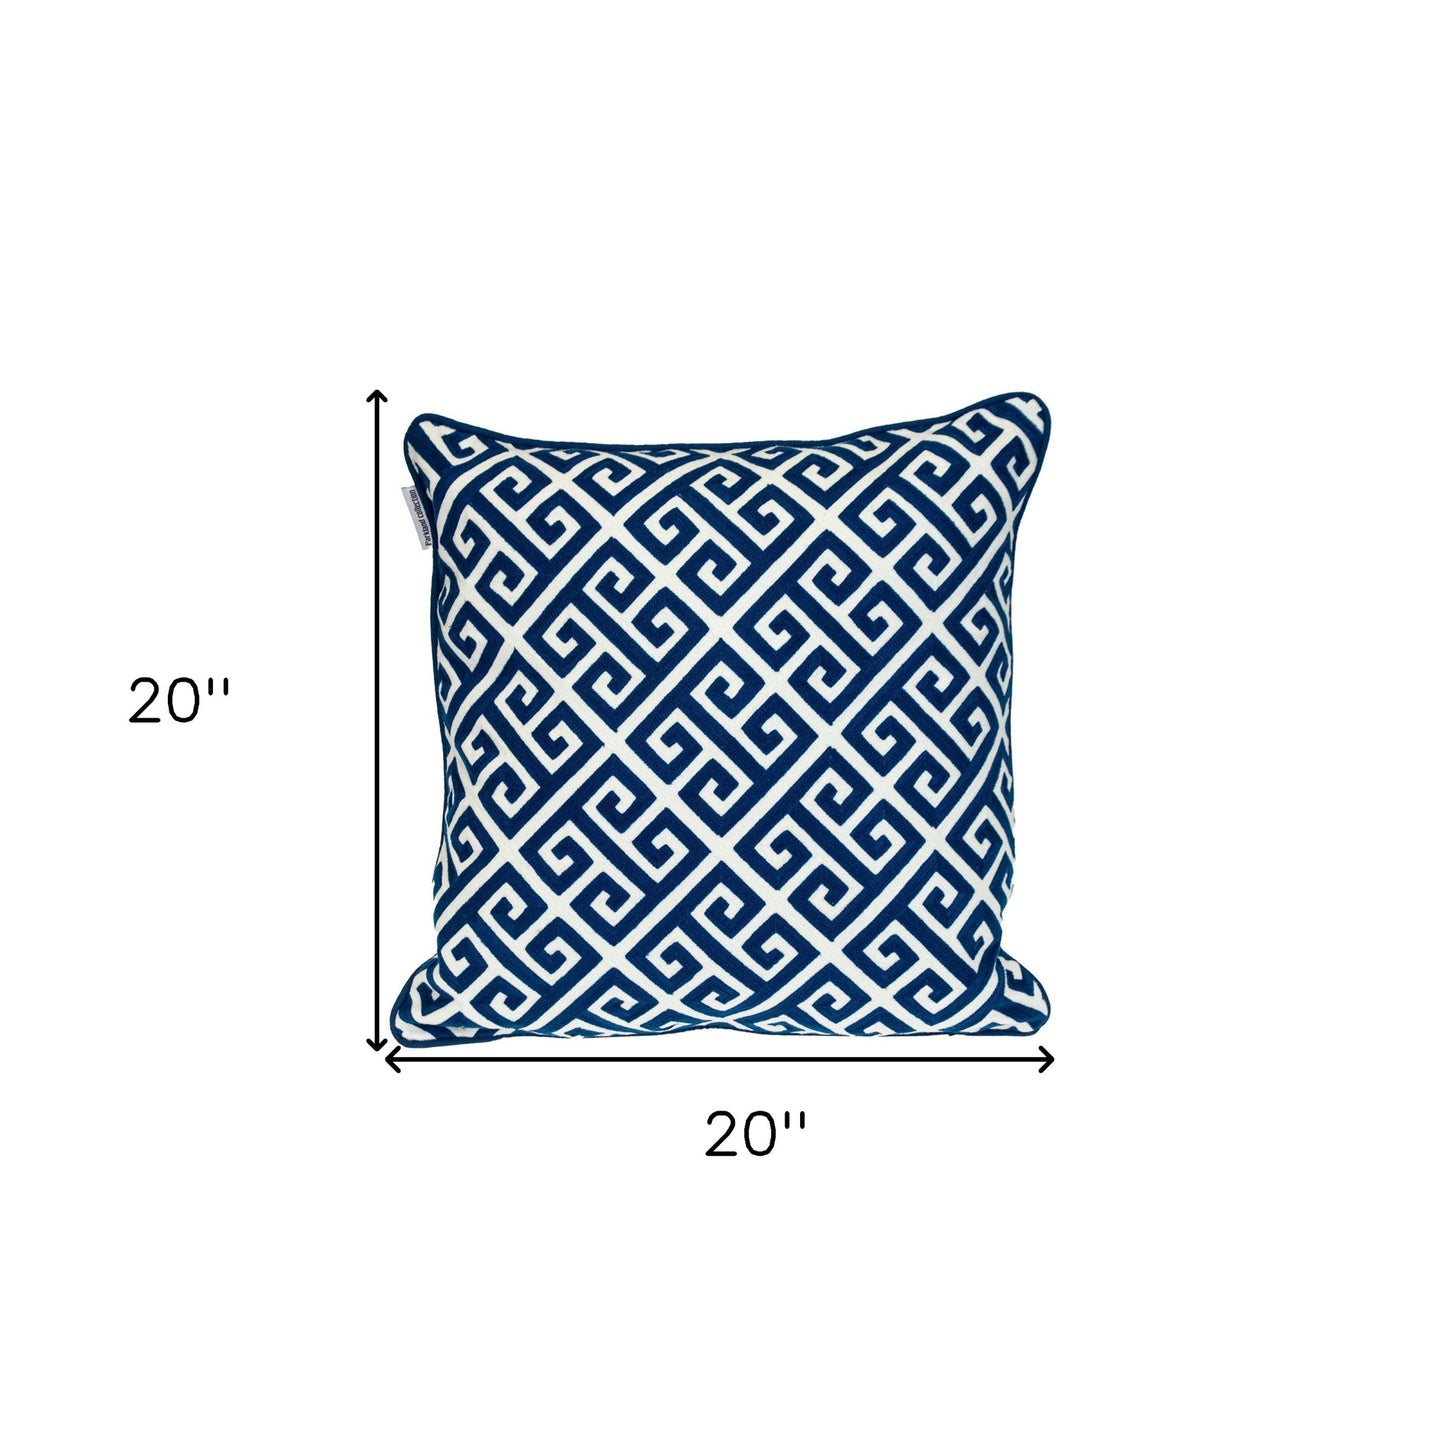 18" X 18" Blue 100% Cotton Greek Key Zippered Pillow